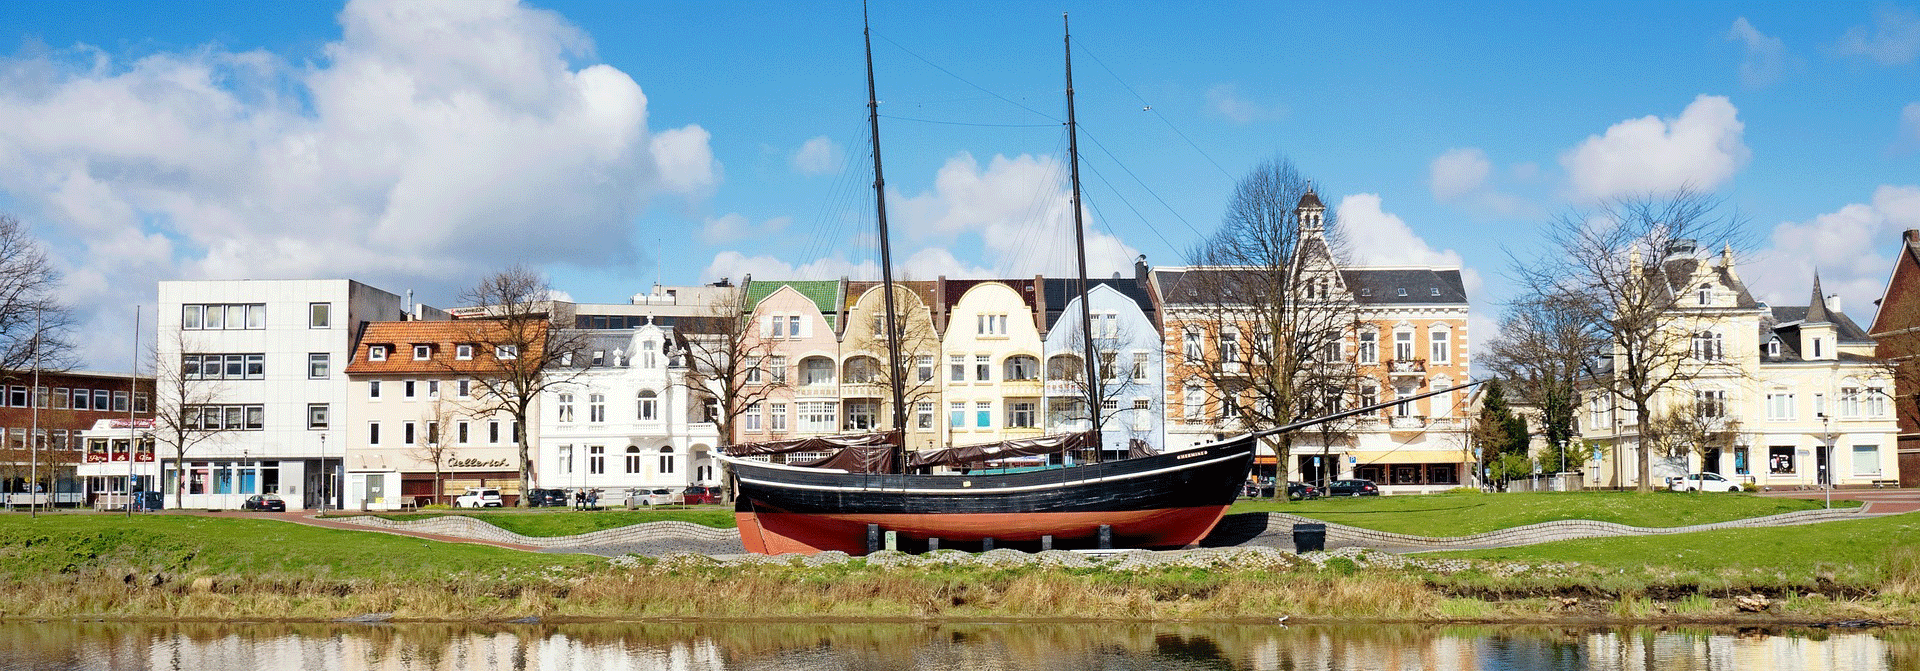 Segelboot Hermione am Ufer von Cuxhaven